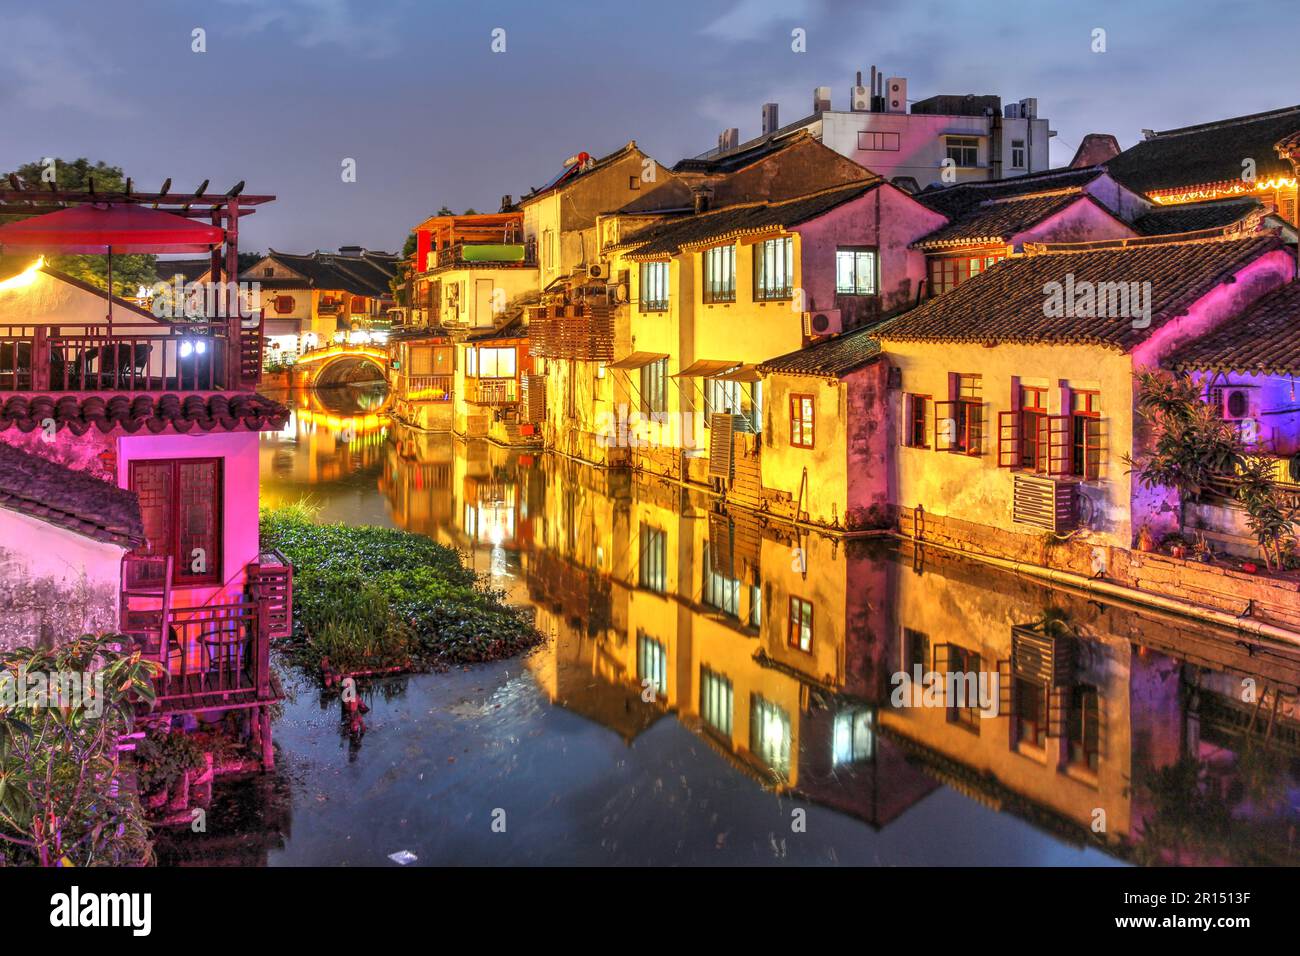 Night canal scene in Tongli, a beautiful water town nearby Suzhou, Jiangsu province, China. Stock Photo